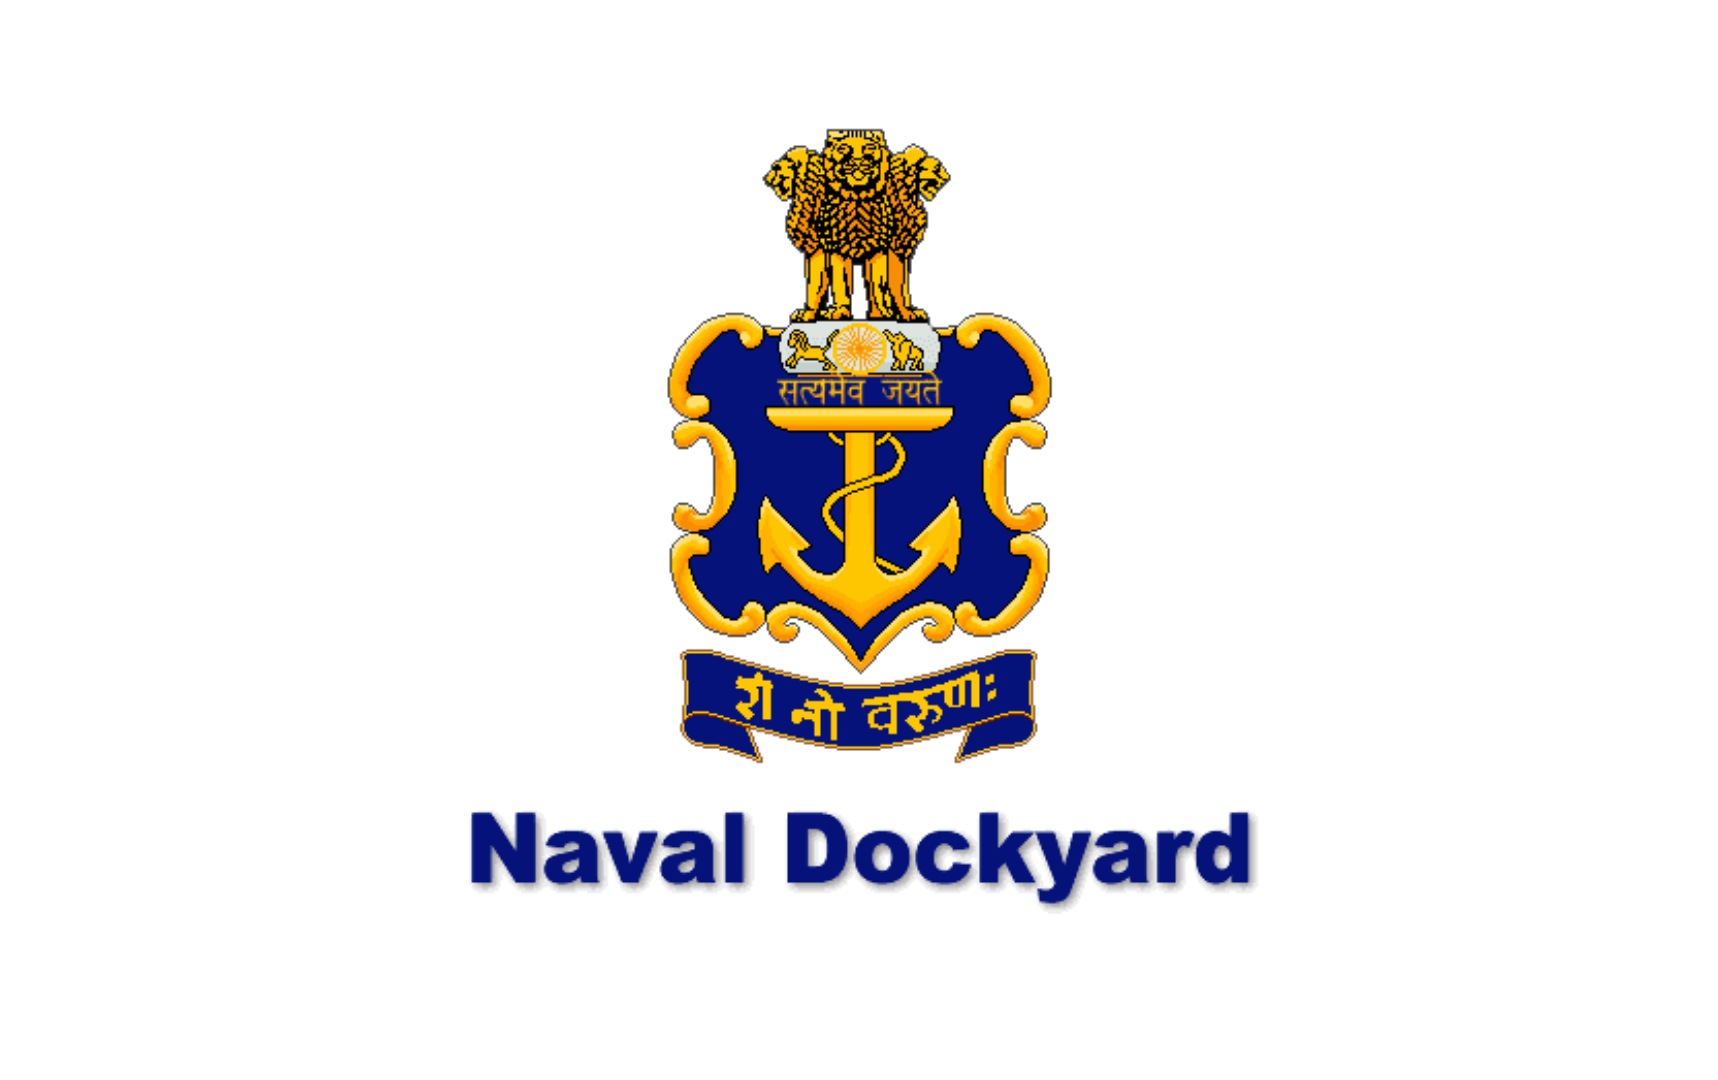 Naval Dockyard Visakhapatnam Recruitment 2021 विशाखापट्टणम नेव्हल डॉकयार्ड मार्फत अप्रेंटिस पदाच्या 275 जागांसाठी भरती